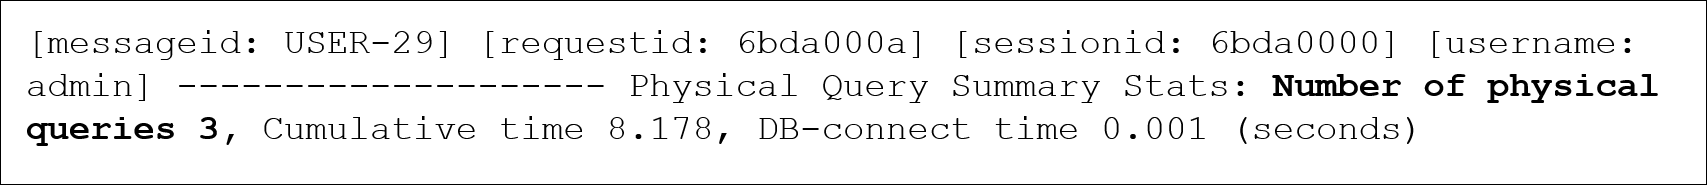 以下為 GUID-6AD88CC1-CED9-4609-BB30-F6B0F94BB105-default.jpg 的說明